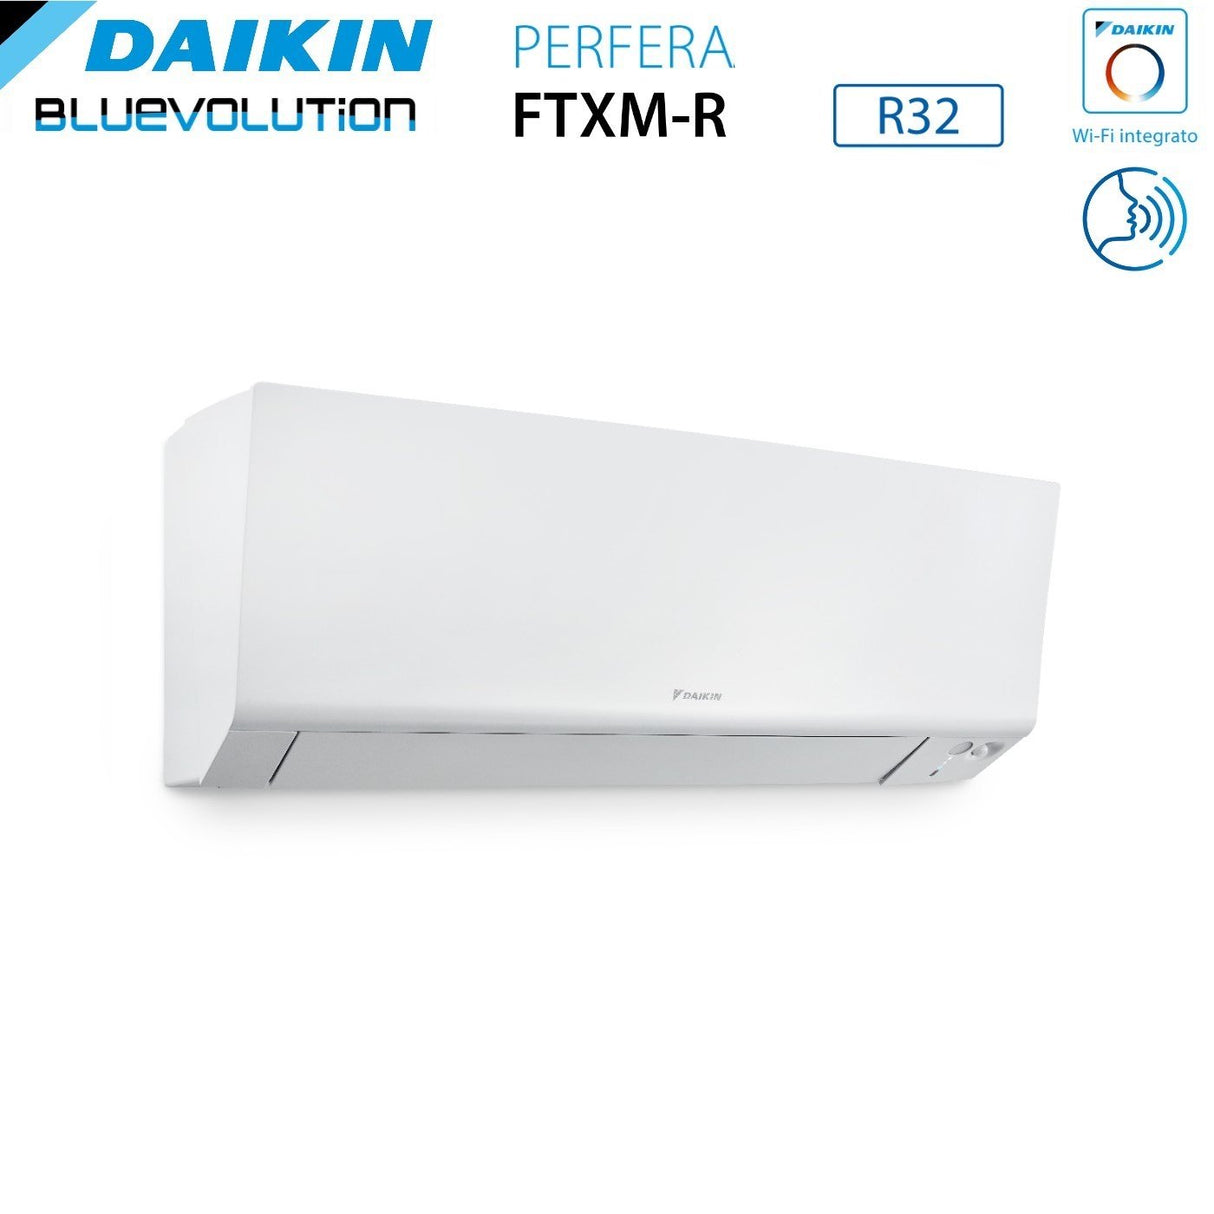 immagine-4-daikin-climatizzatore-condizionatore-daikin-bluevolution-quadri-split-inverter-serie-ftxmr-perfera-wall-79918-con-4mxm80a-r-32-wi-fi-integrato-70009000900018000-garanzia-italiana